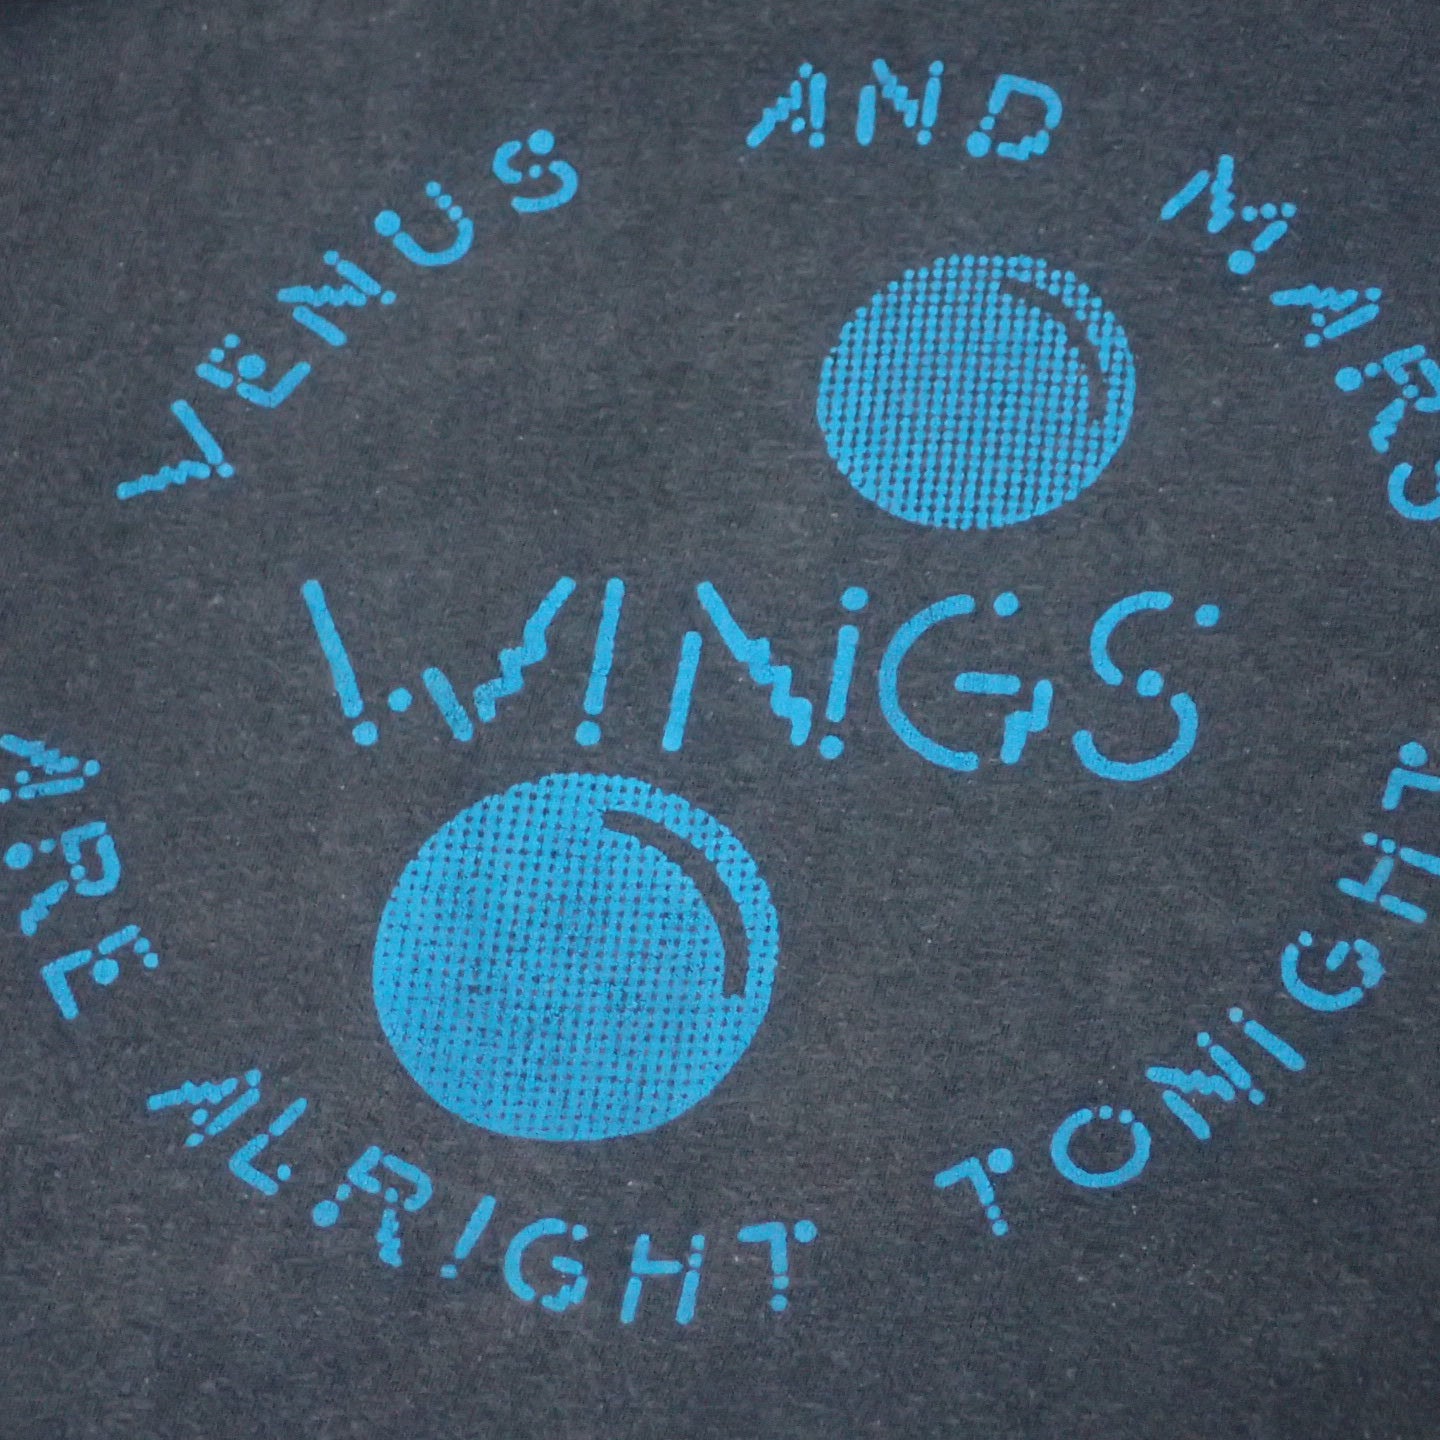 70s Wings T-shirt "Venus and Mars Tee"